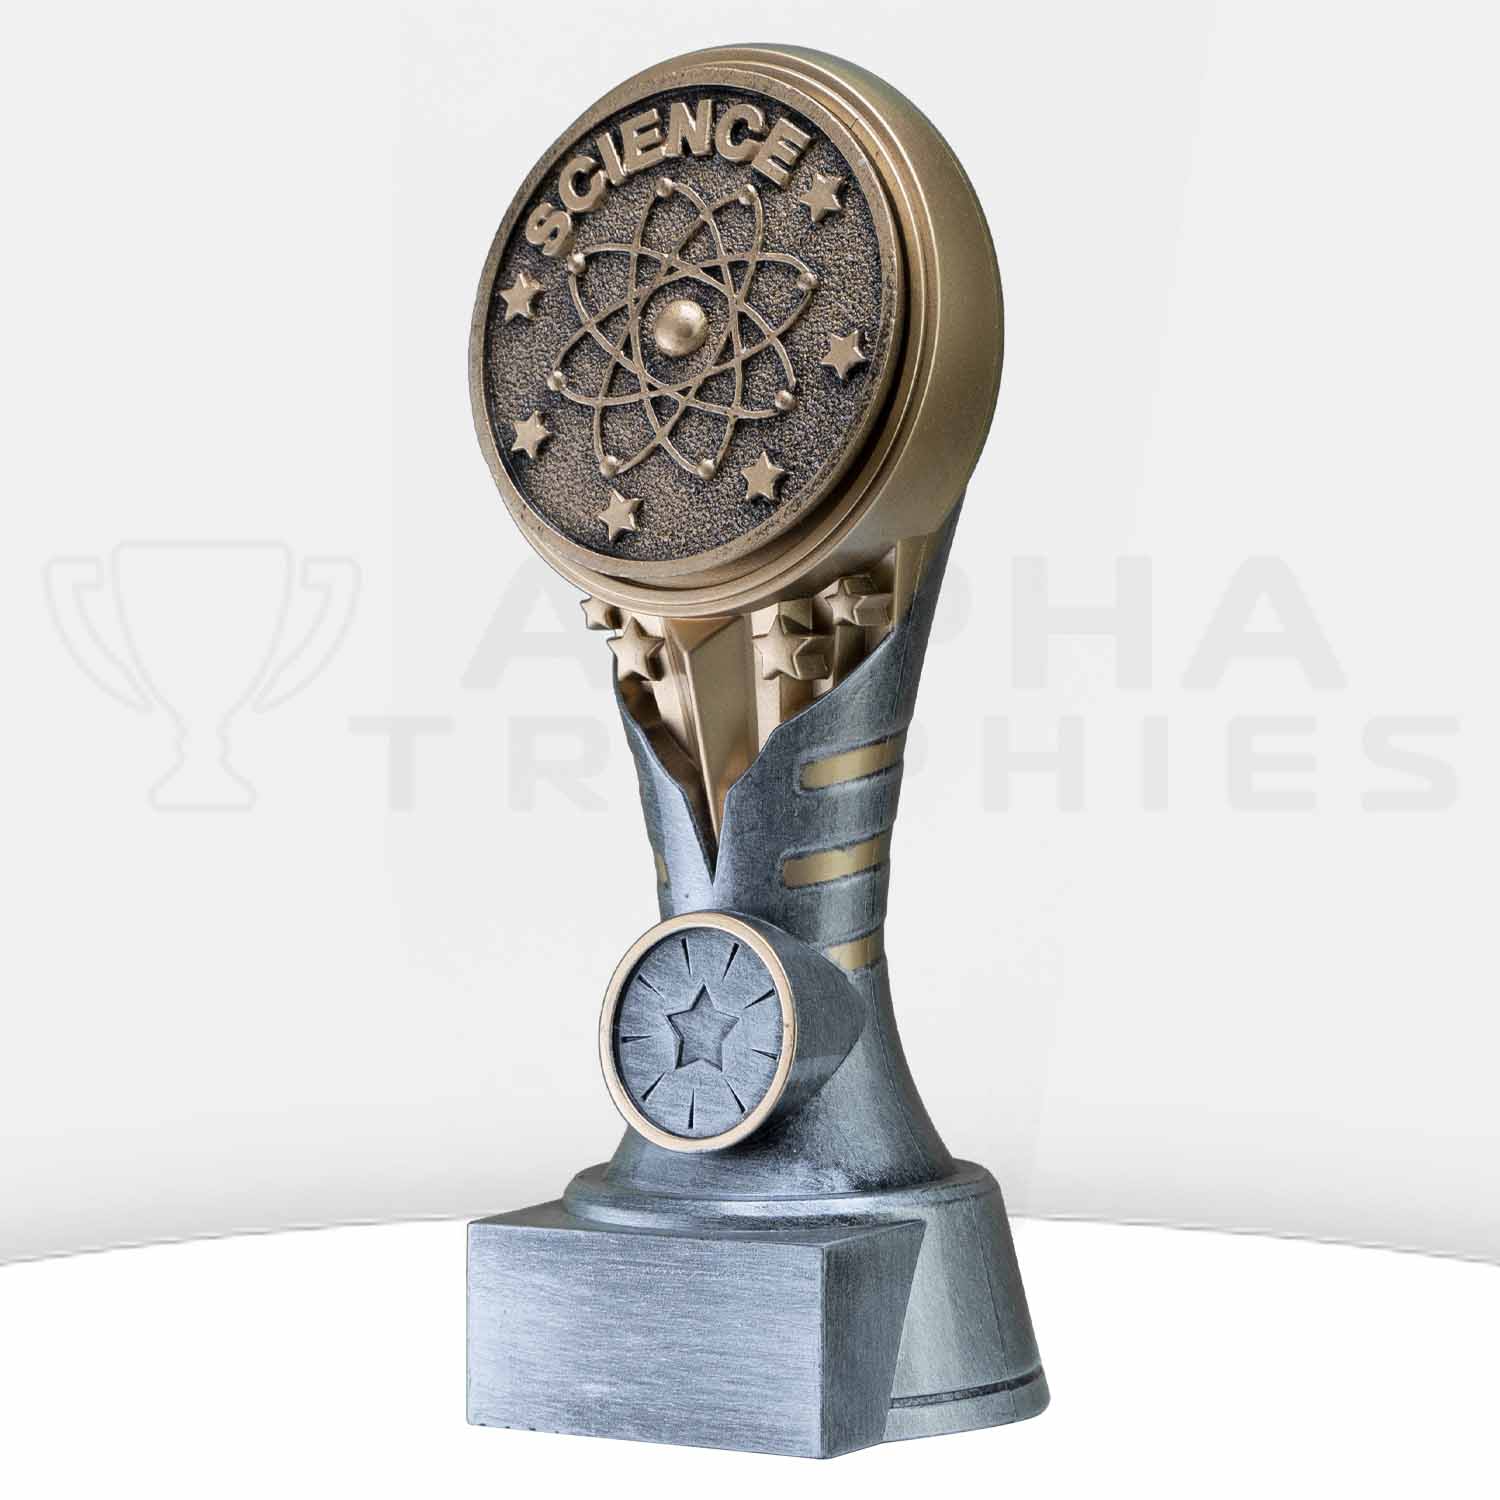 ikon-trophy-science-kn212a-side